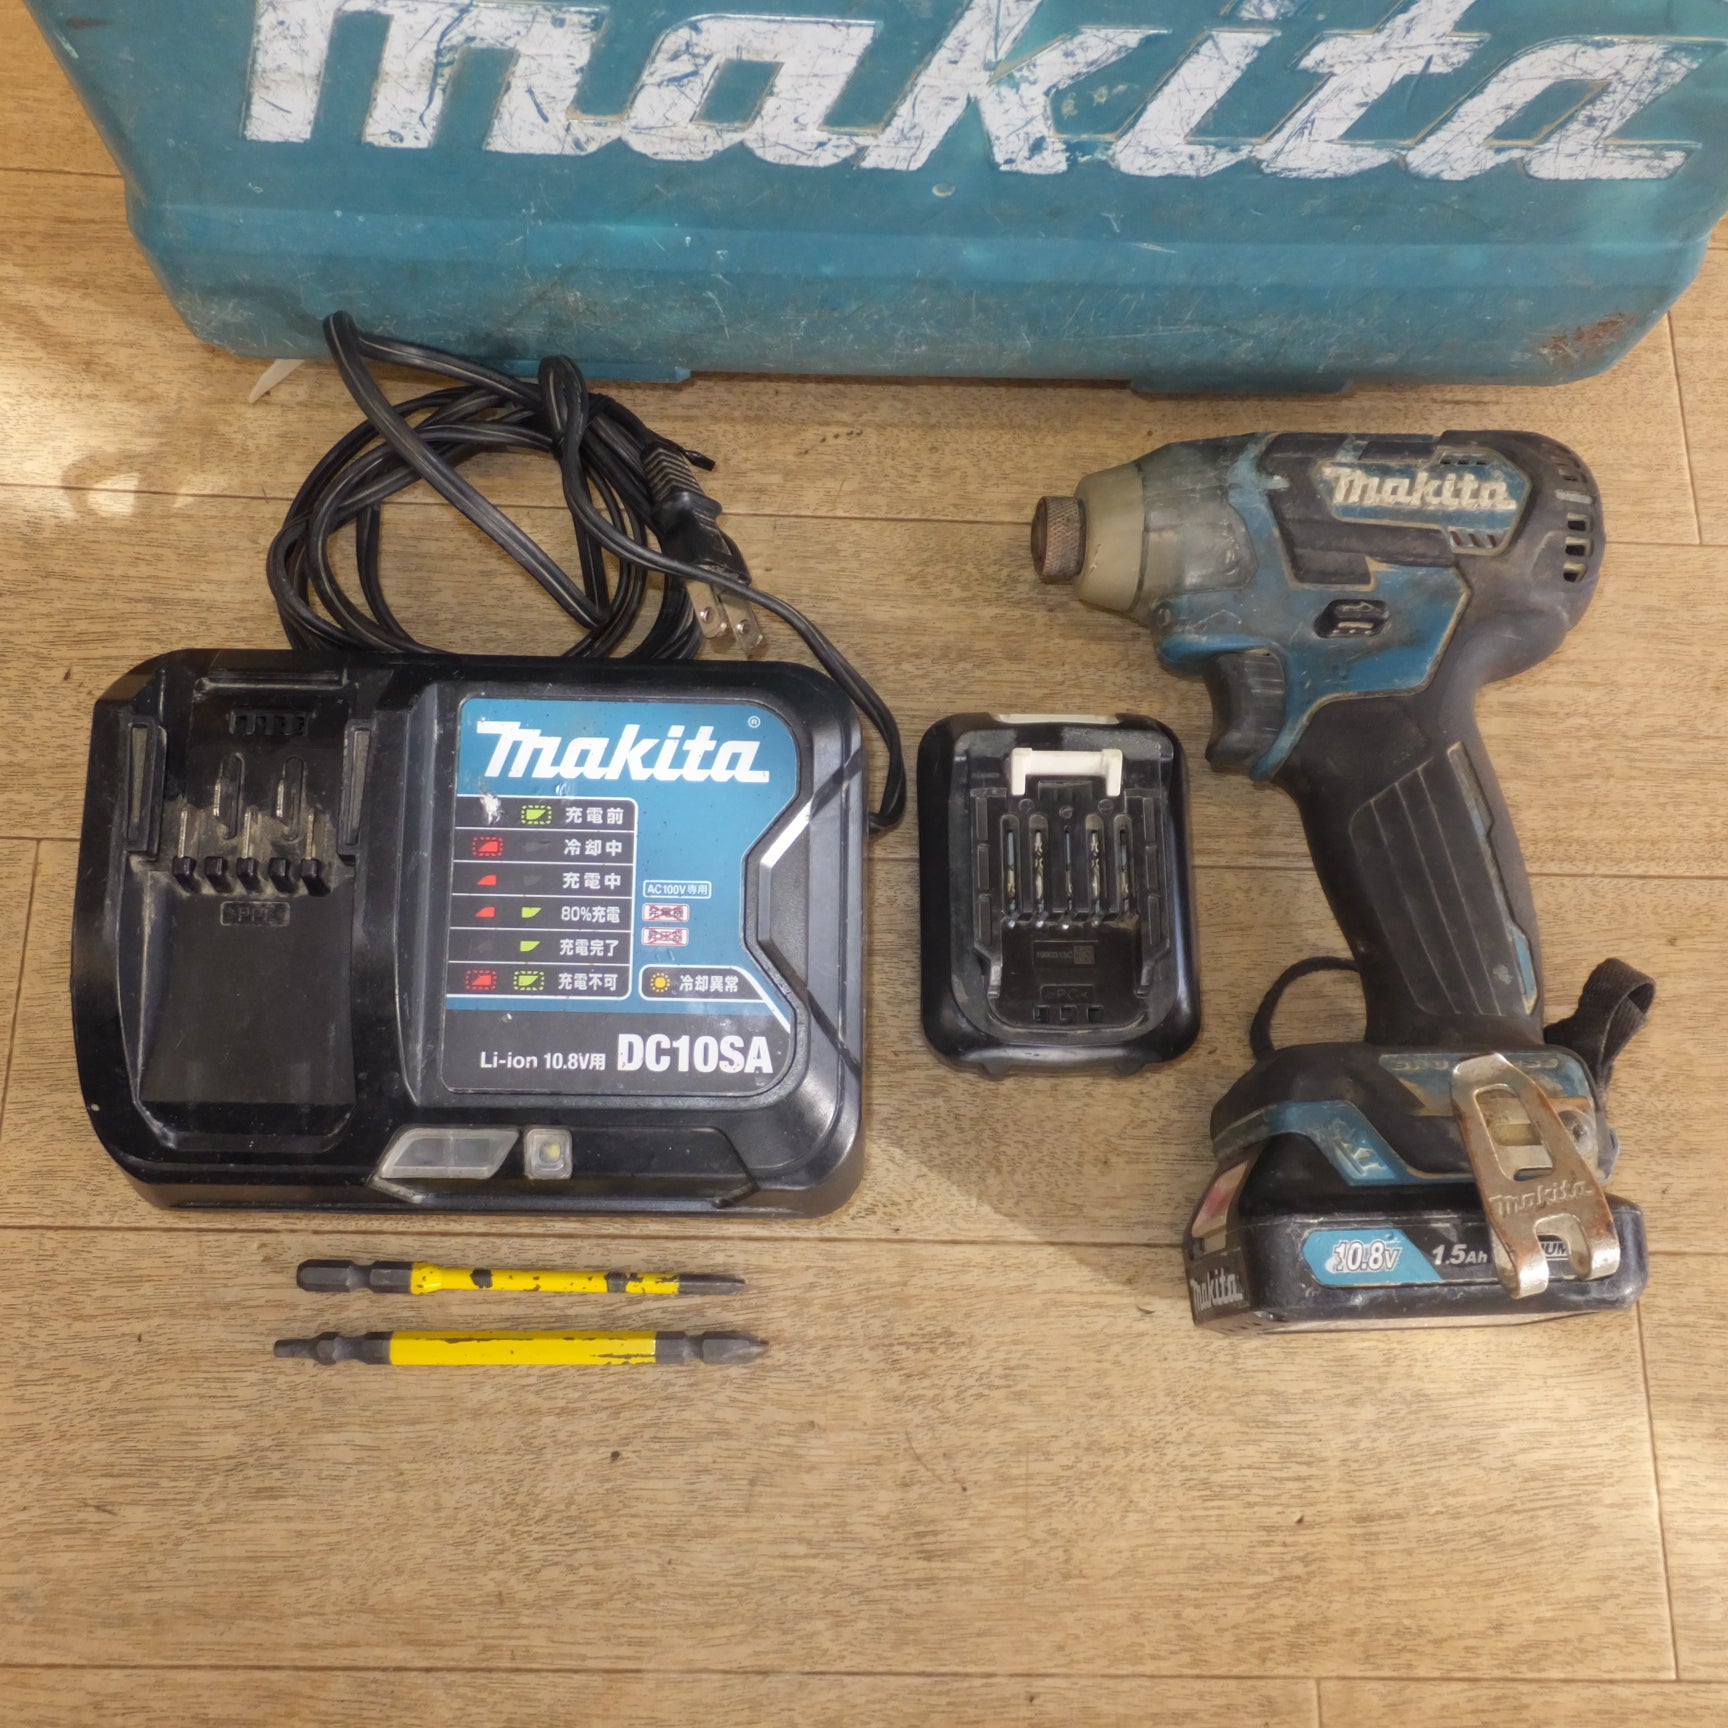 注文makita [マキタ] 充電式インパクトドライバ [TD111DSHX] 1.5Ah 10.8V DIY コードレス マキタブルー 質量0.97kg 電動工具 /未開封品 4376 本体